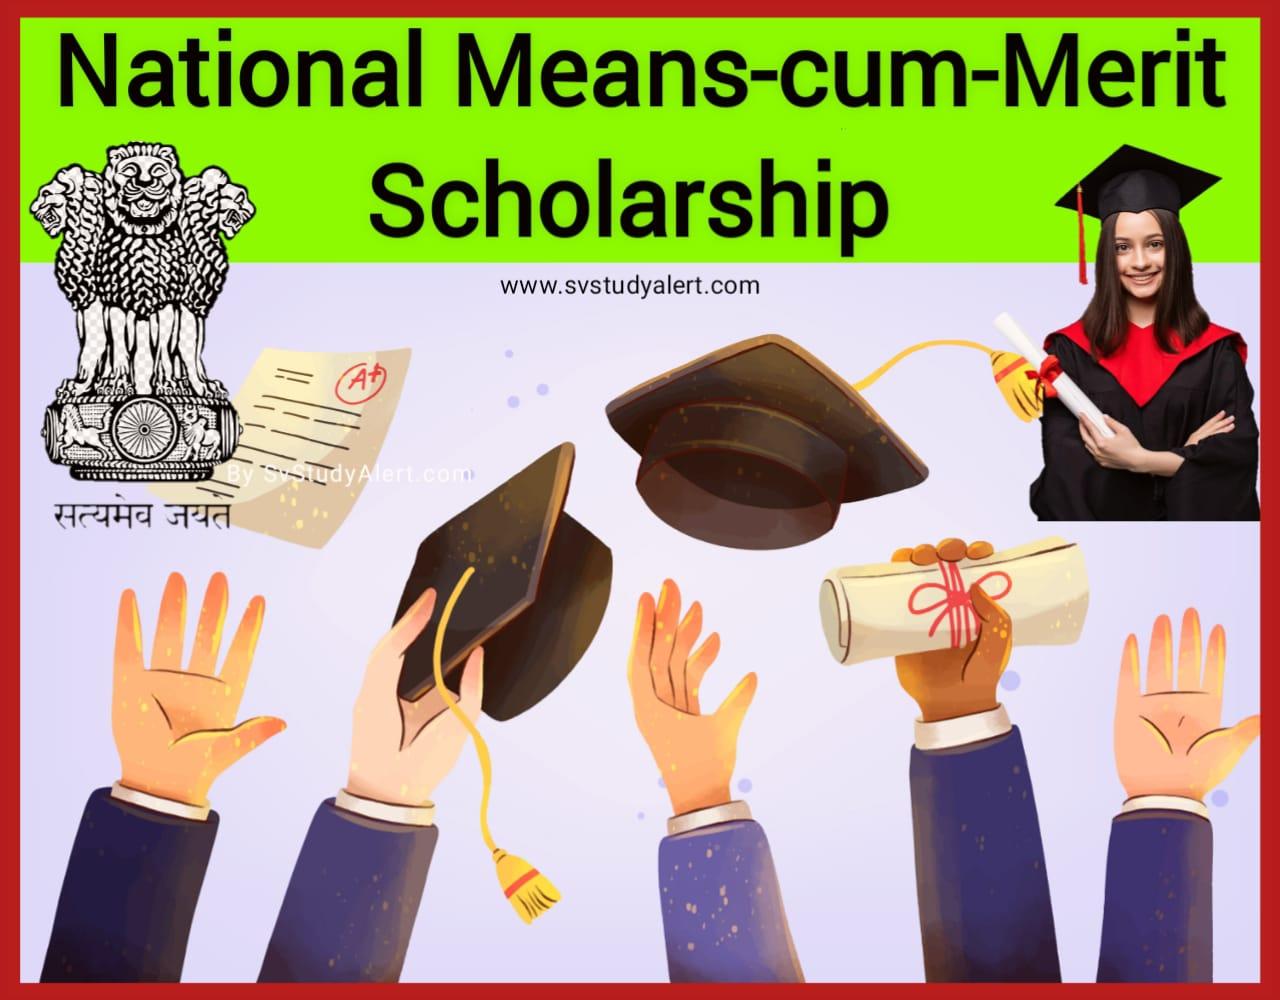 National Means-Cum-Merit Scholarship Scheme